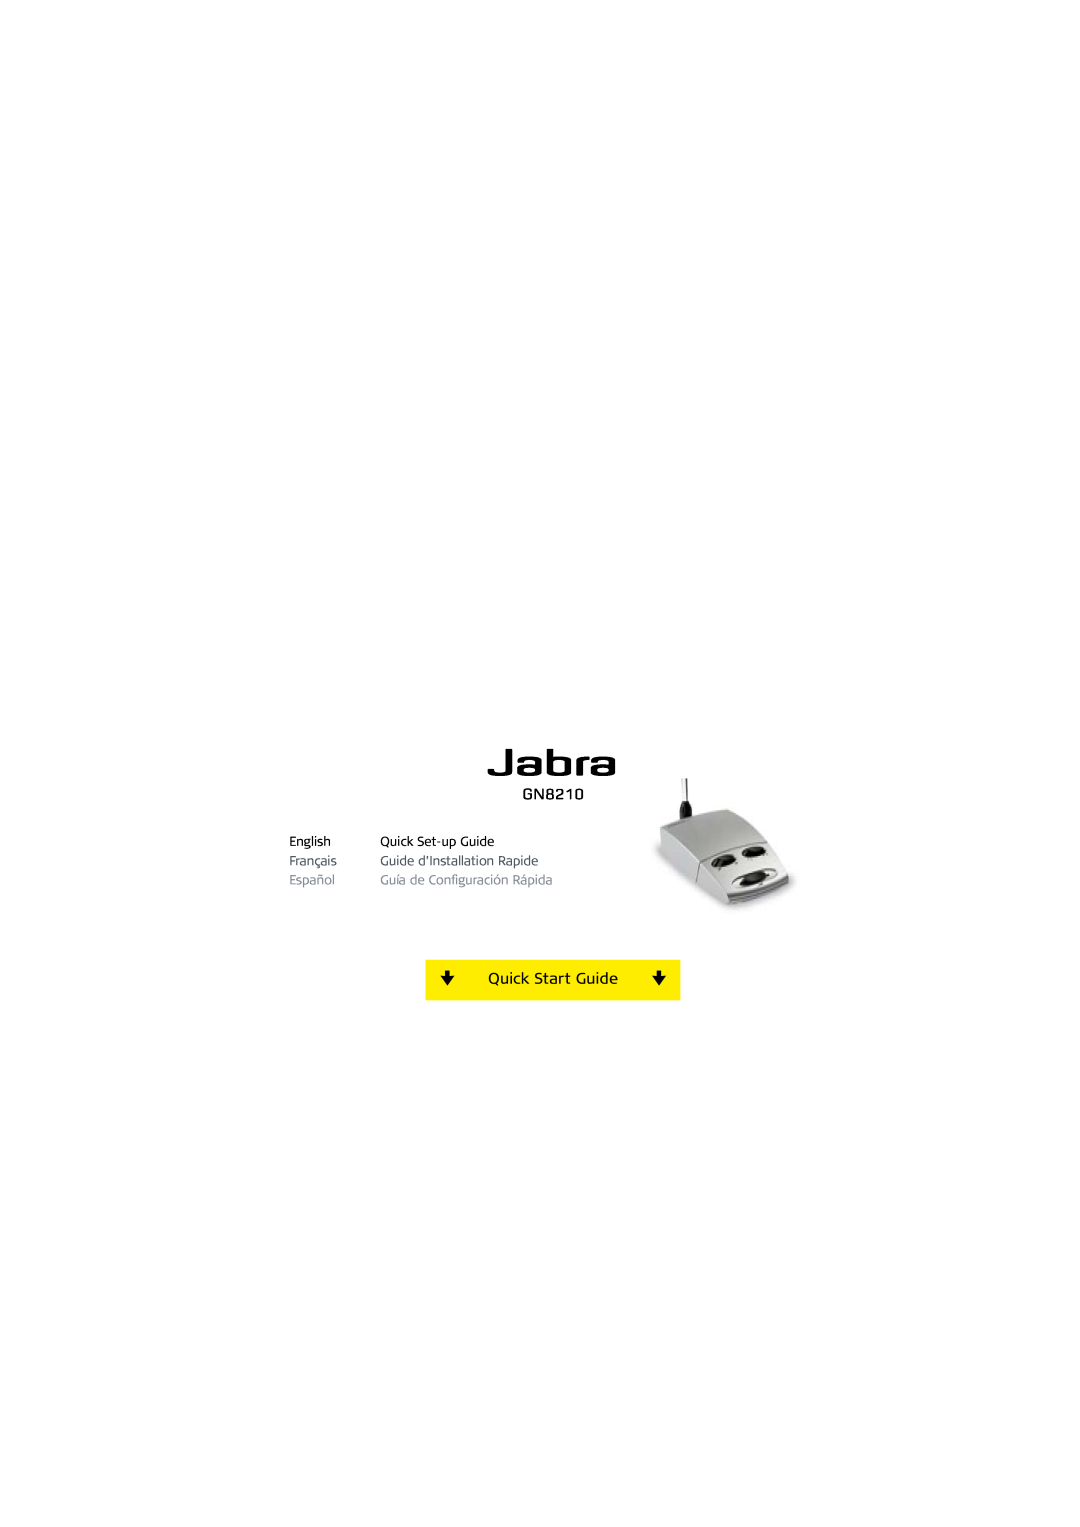 Jabra GN8210 setup guide Quick Start Guide, English, Quick Set-upGuide, Français, Guide d’Installation Rapide, Español 